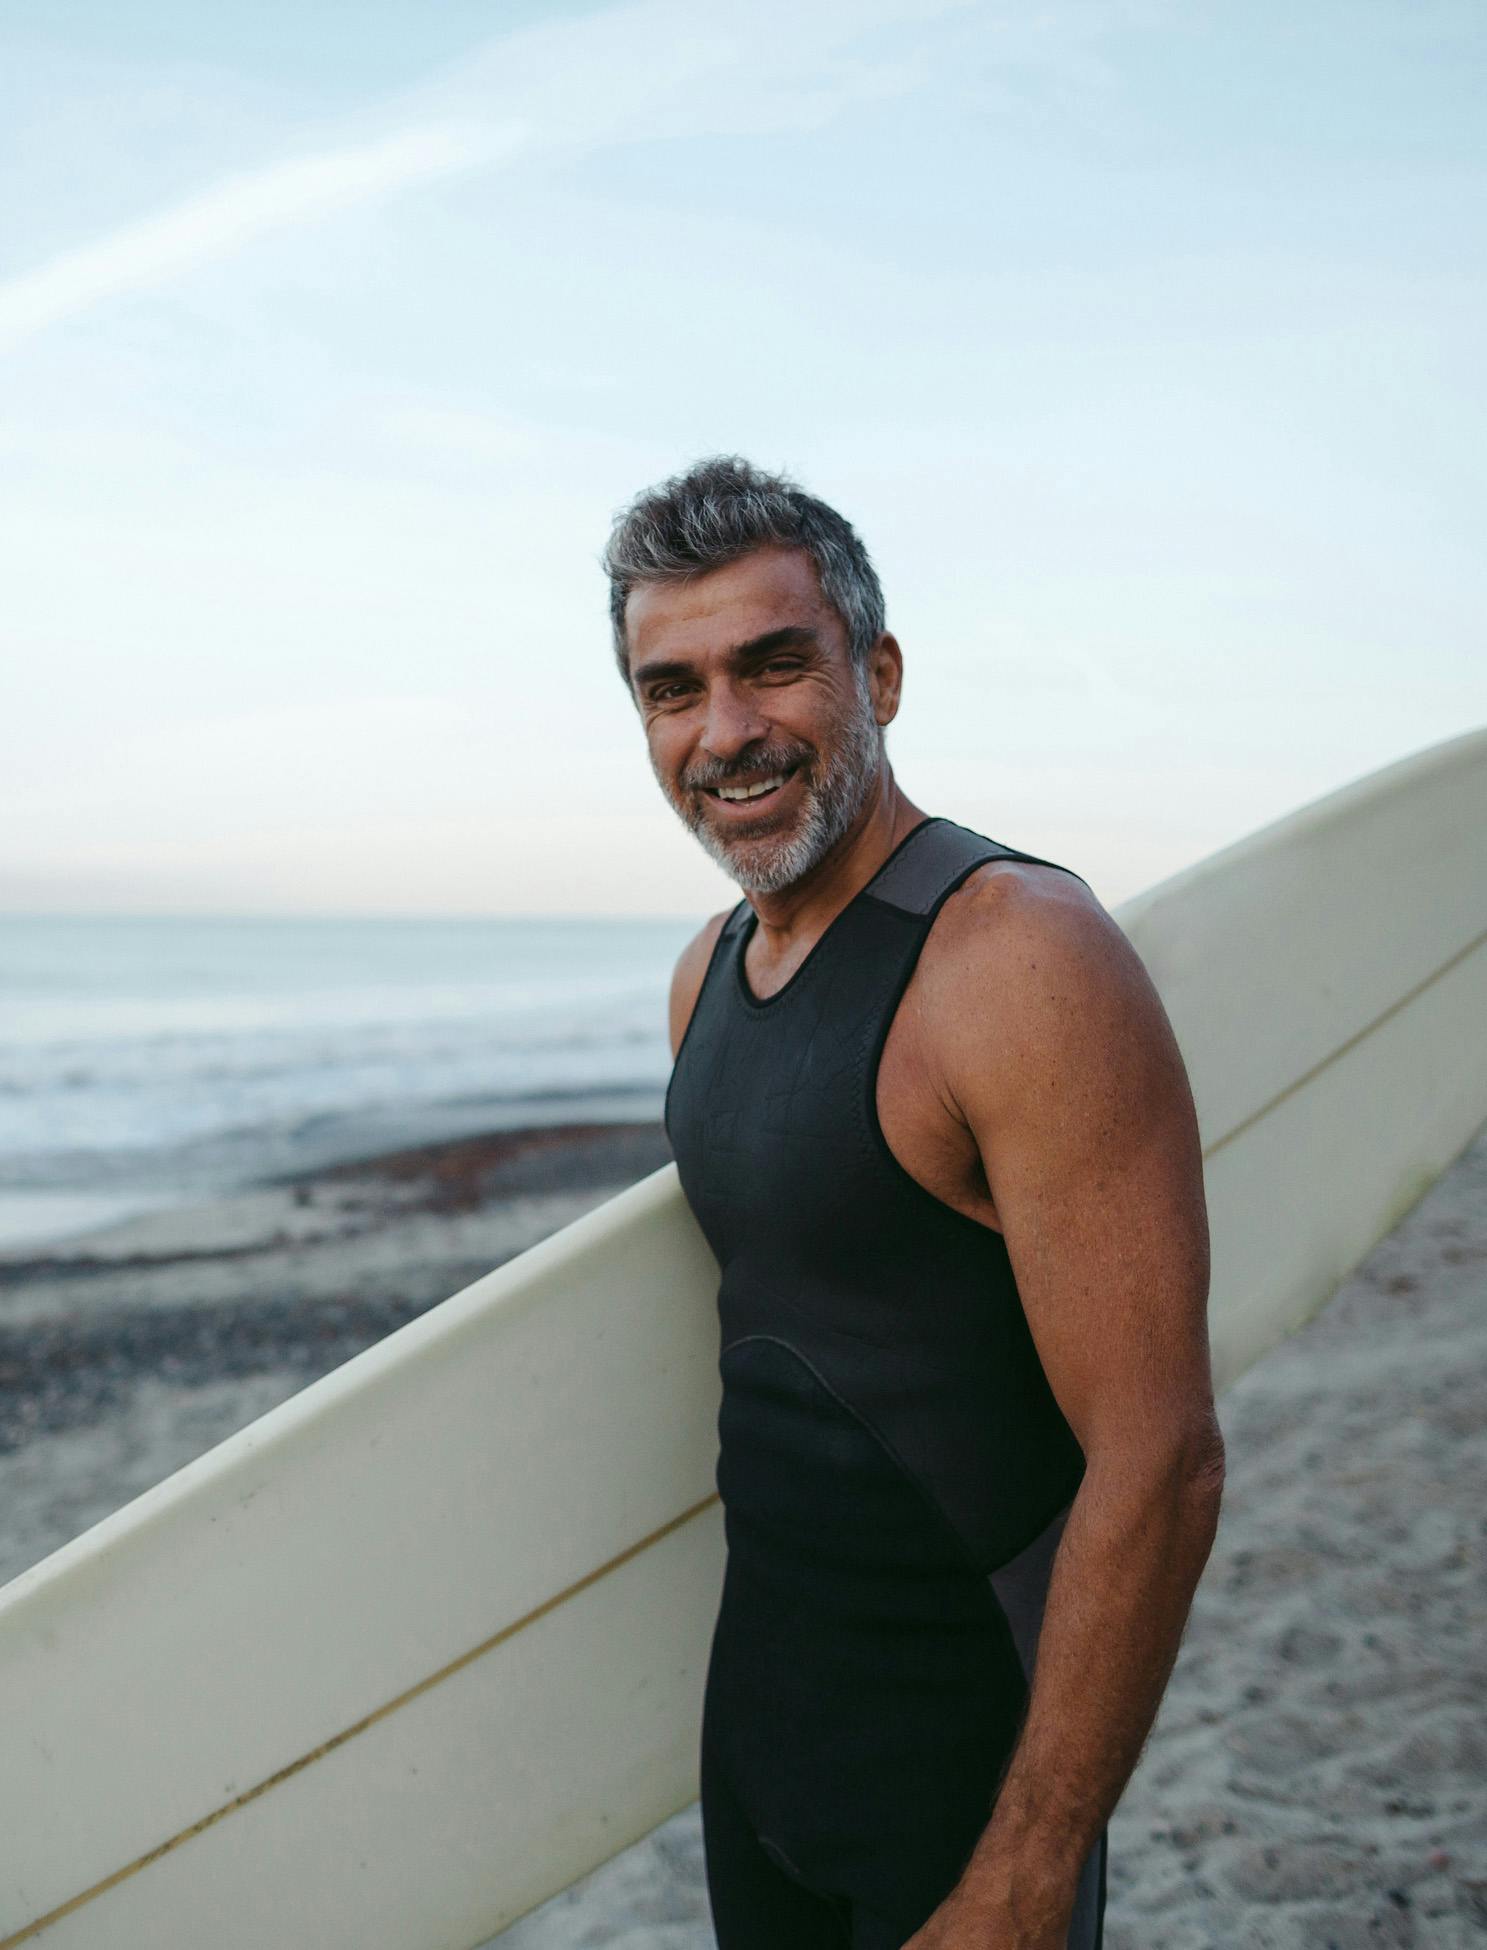 Hombre en la playa sonriendo a la cámara, sosteniendo tabla de surf